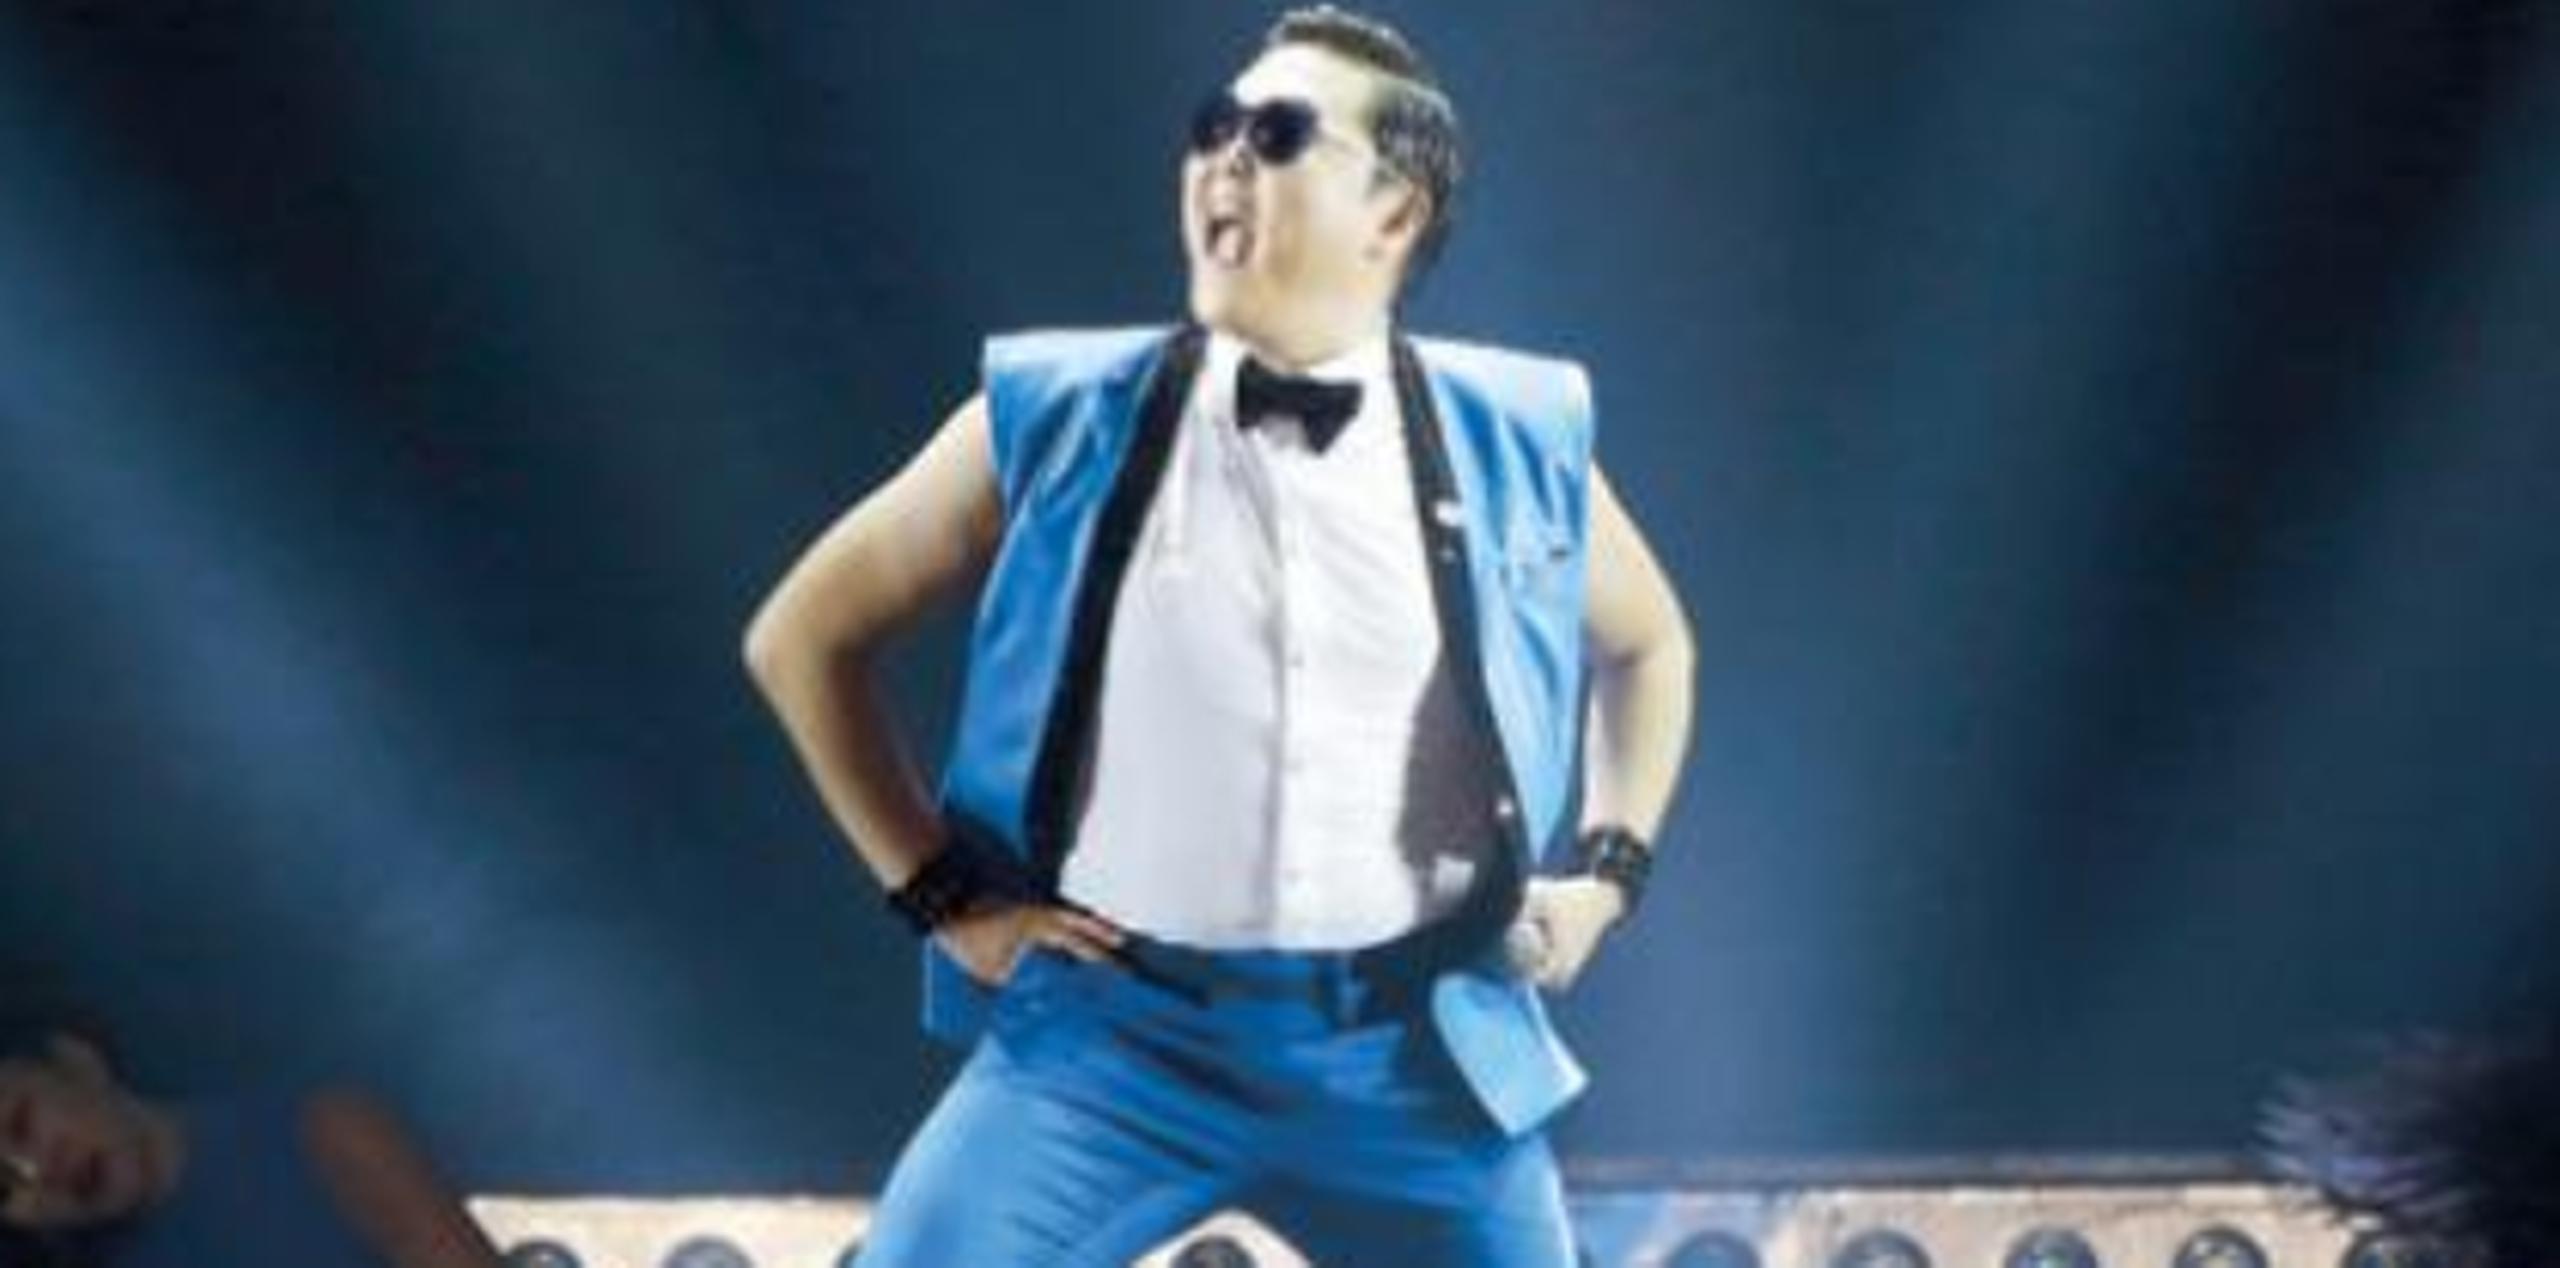 El éxito de Psy, "Gangnam Style", es hasta día de hoy el vídeo más visto de Youtube con más de 2,800 millones de reproducciones. (Archivo)